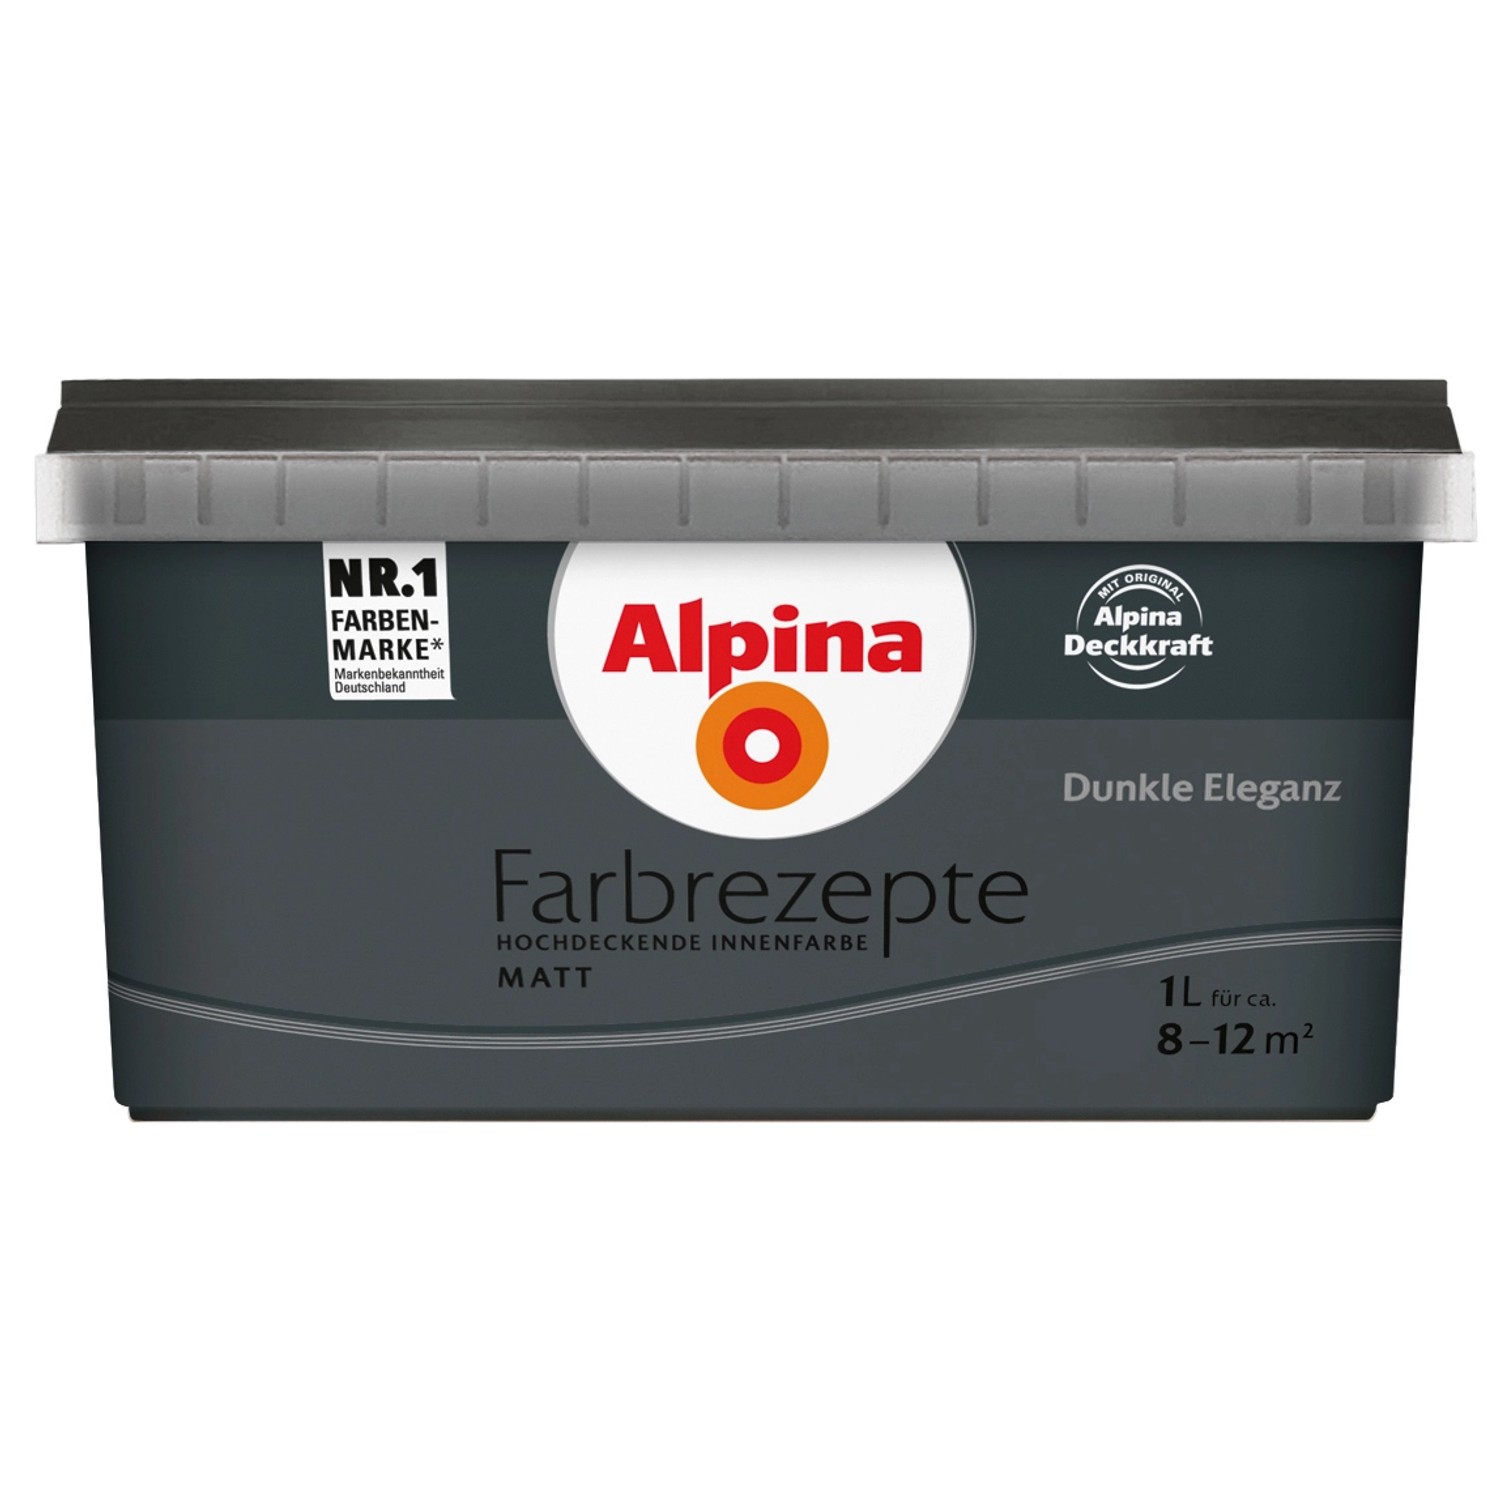 Alpina Farbrezepte Dunkle Eleganz matt 1 Liter von Alpina